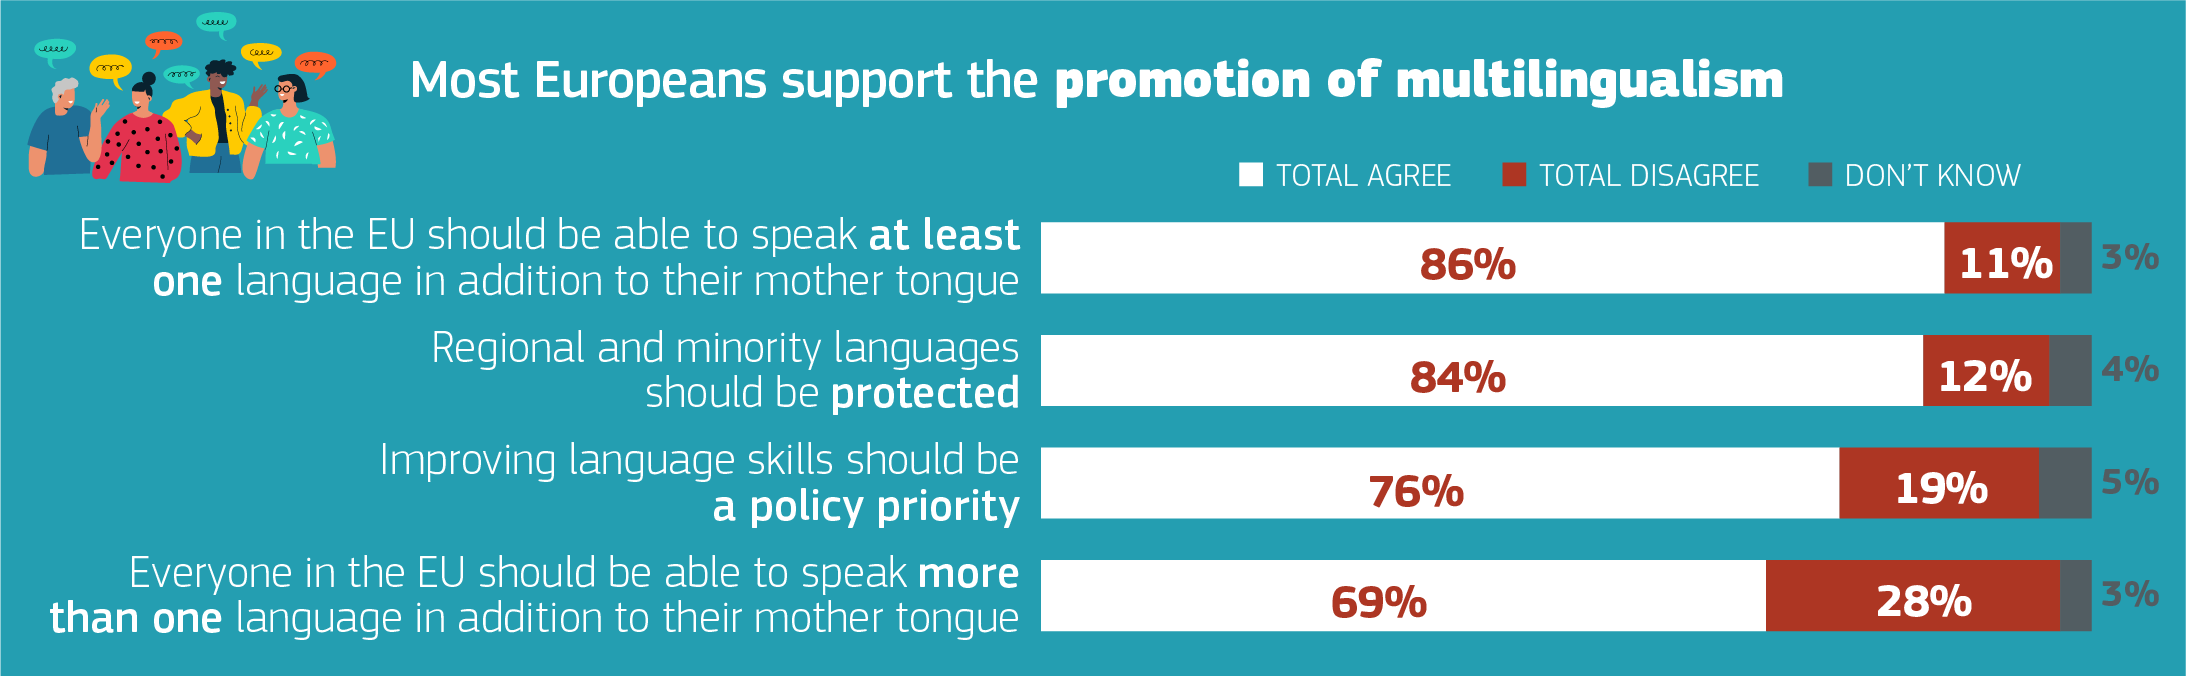 Eurobarómetro: Los europeos y sus lenguas